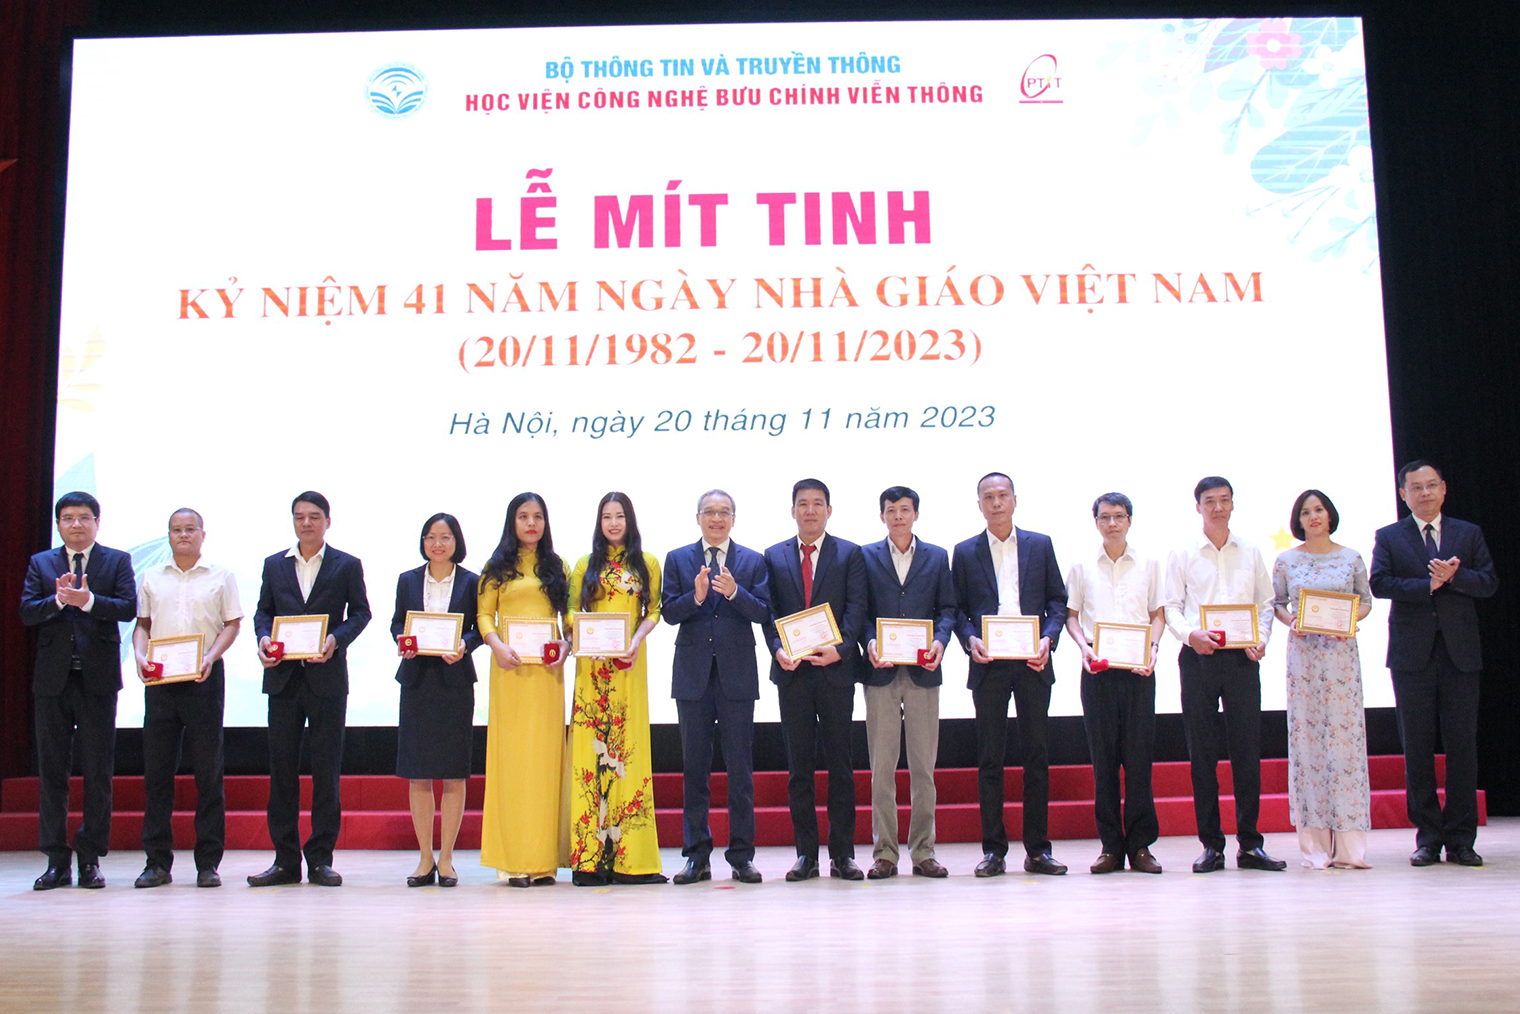 Học viện Công nghệ Bưu chính Viễn thông mít-tinh kỷ niệm 41 năm ngày Nhà giáo Việt Nam- Ảnh 4.